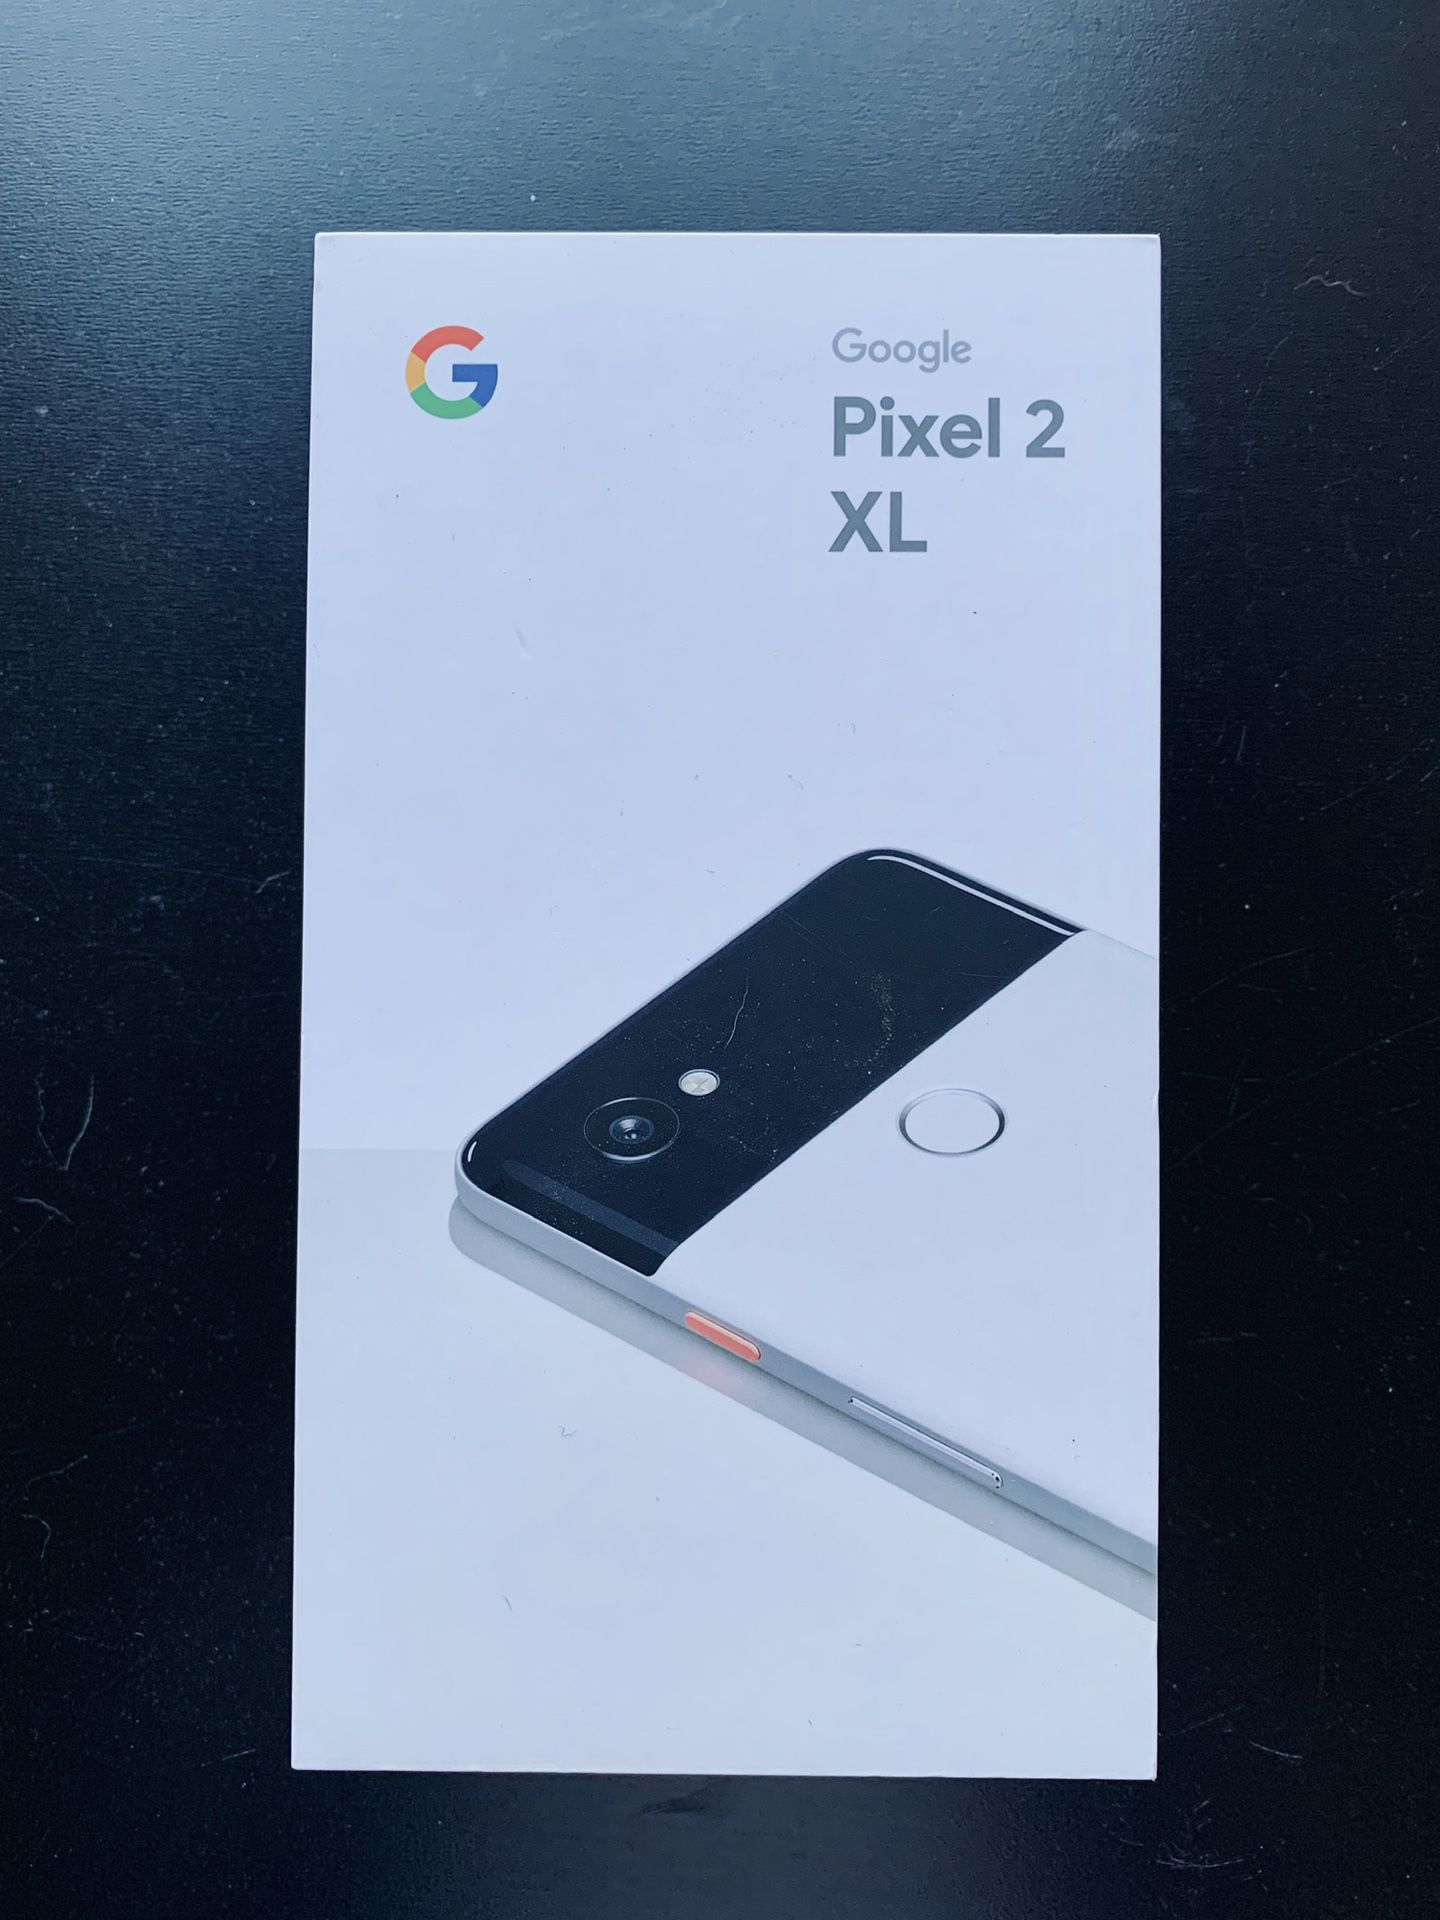 Pixel 2 XL unlocked